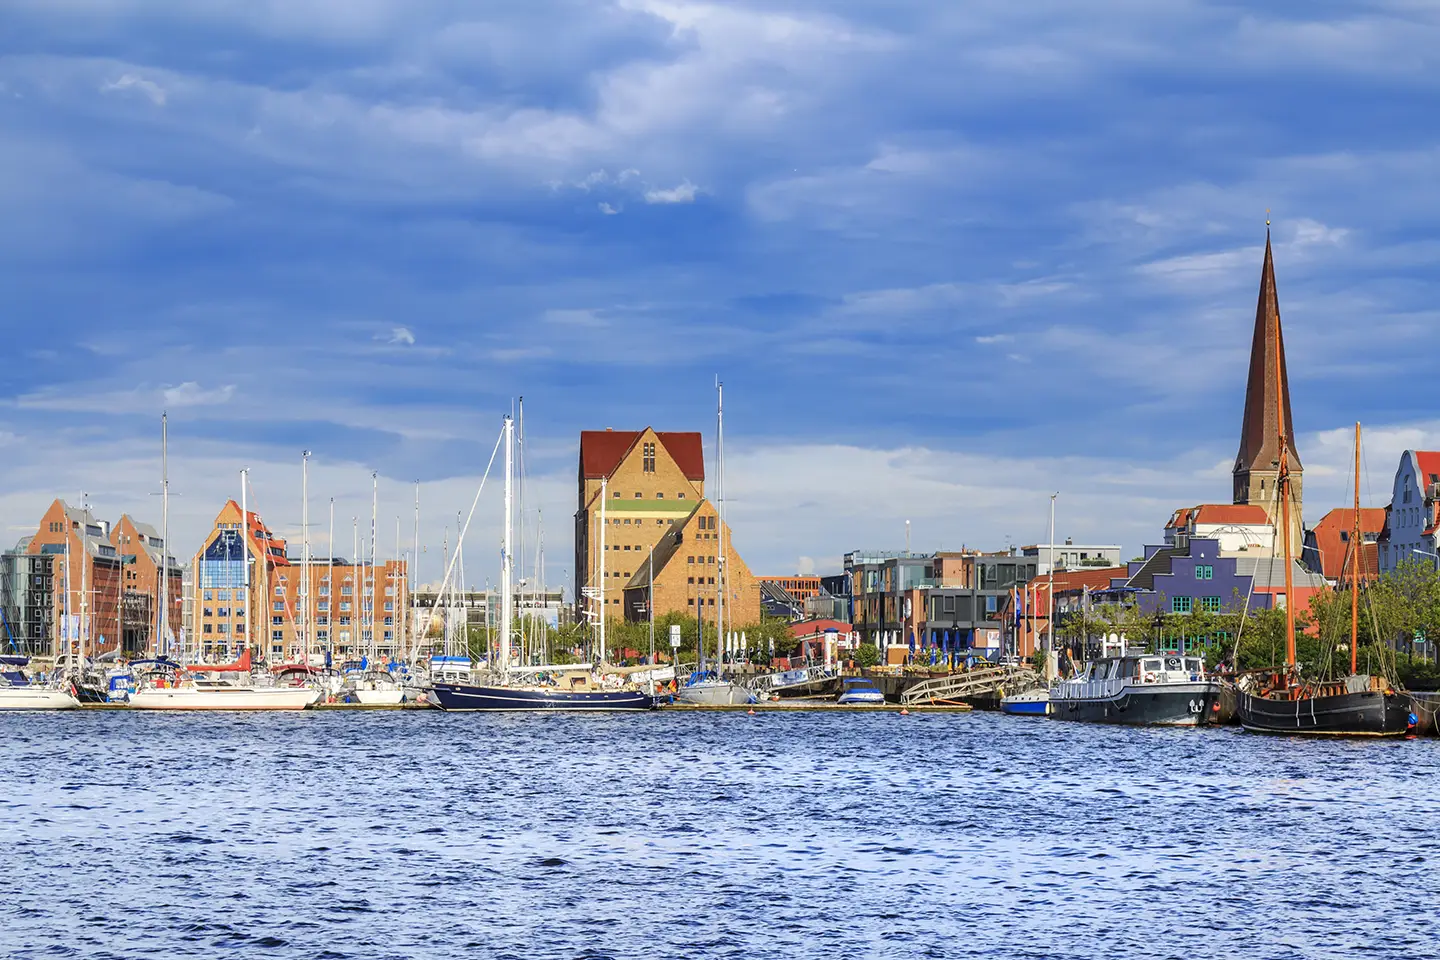 Stadt Rostock mit Hafen und Segelbooten